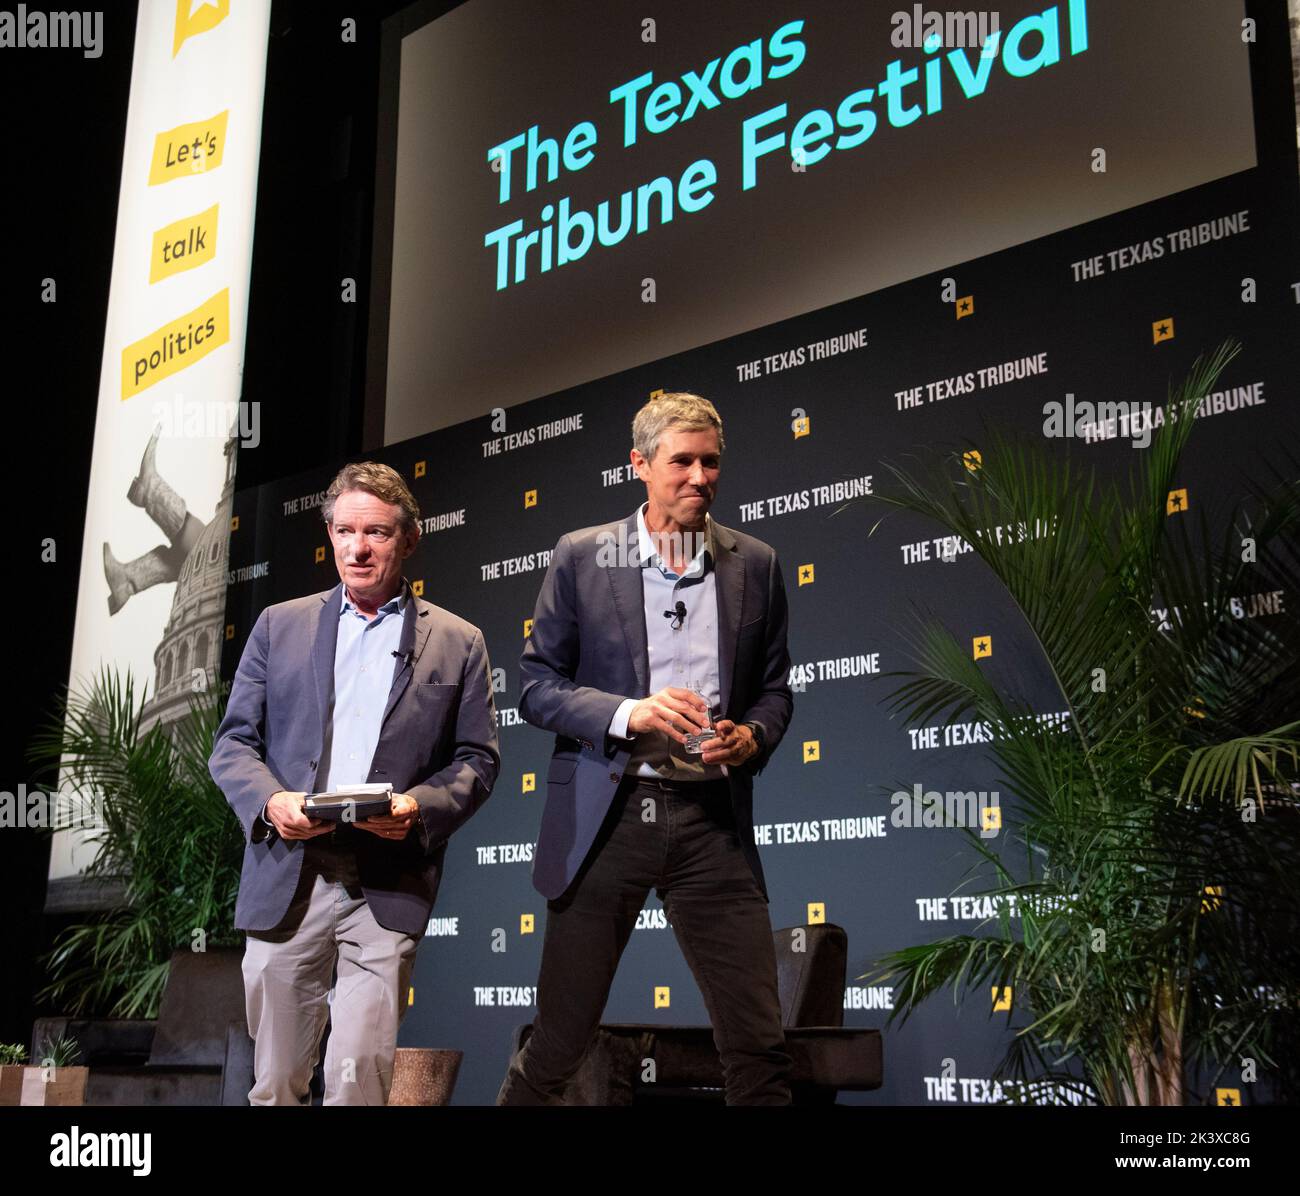 Autor, dramaturgo y guionista de la revista Lawrence WRIGHT, L., durante una entrevista con Beto O'Rourke en el festival anual Texas Tribune en el centro de Austin el 24 de septiembre de 2022. Foto de stock